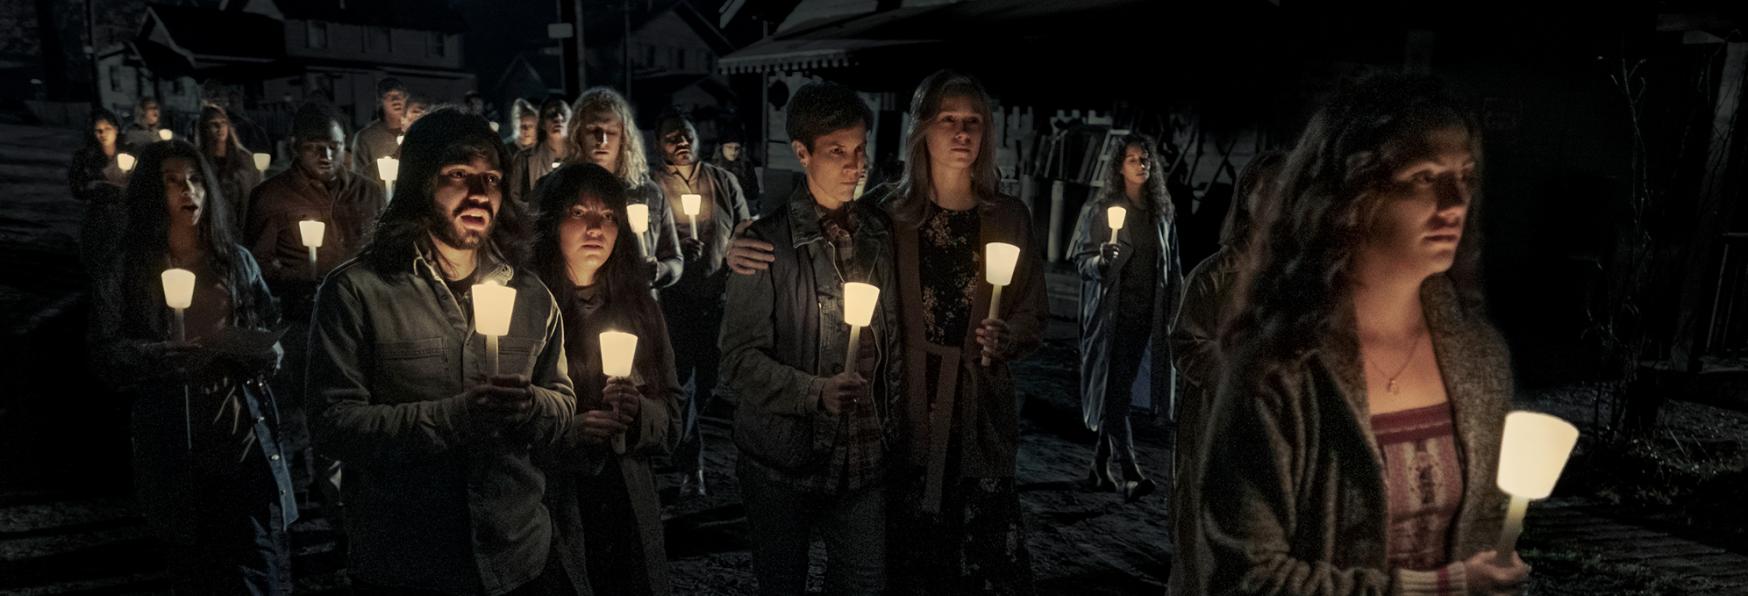 Midnight Mass: Trama, Cast, Trailer, Data di Uscita e Anticipazioni della Serie TV Netflix di Mike Flanagan